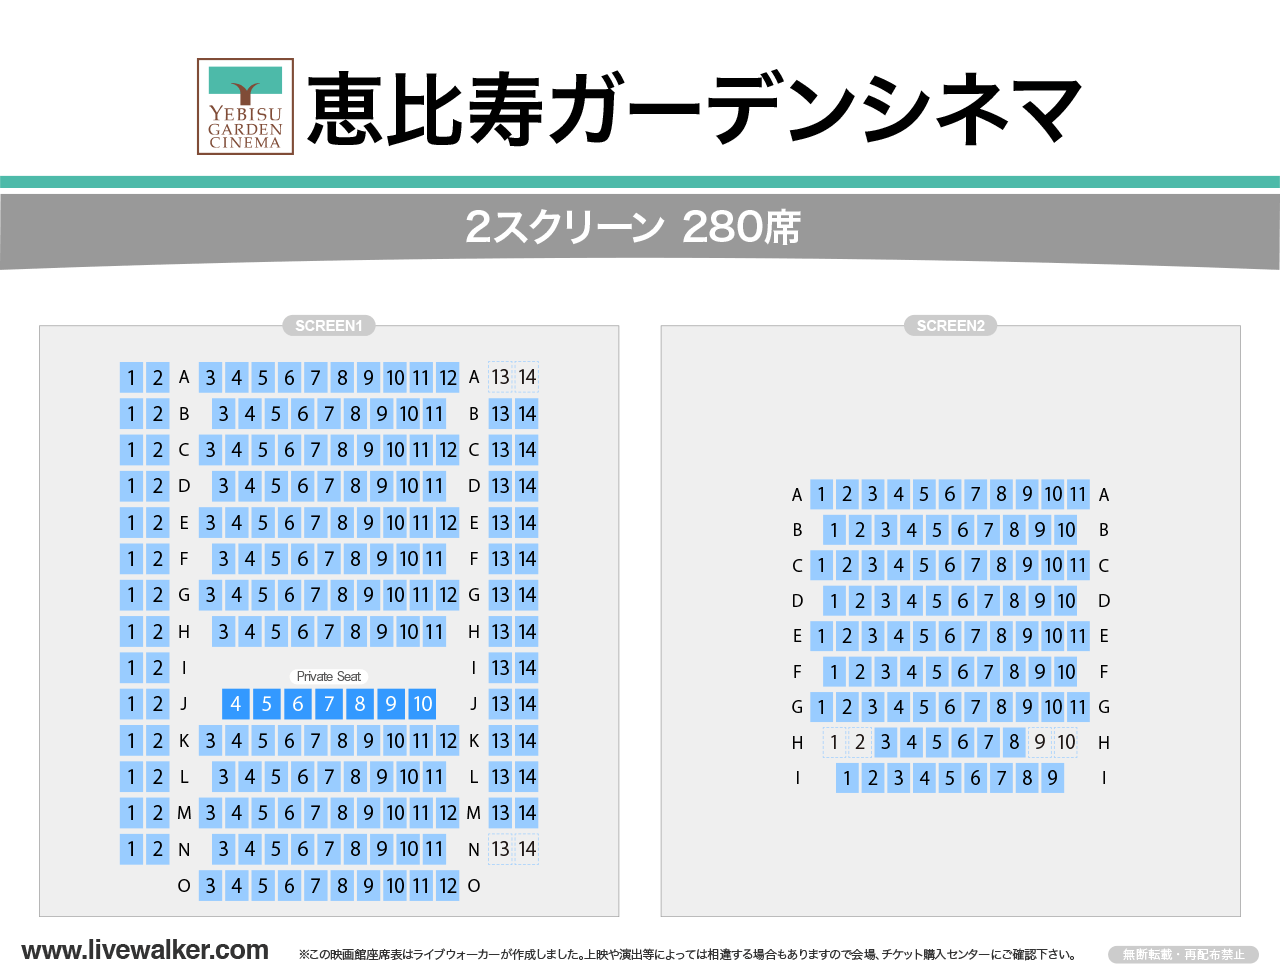 恵比寿ガーデンシネマシネマの座席表